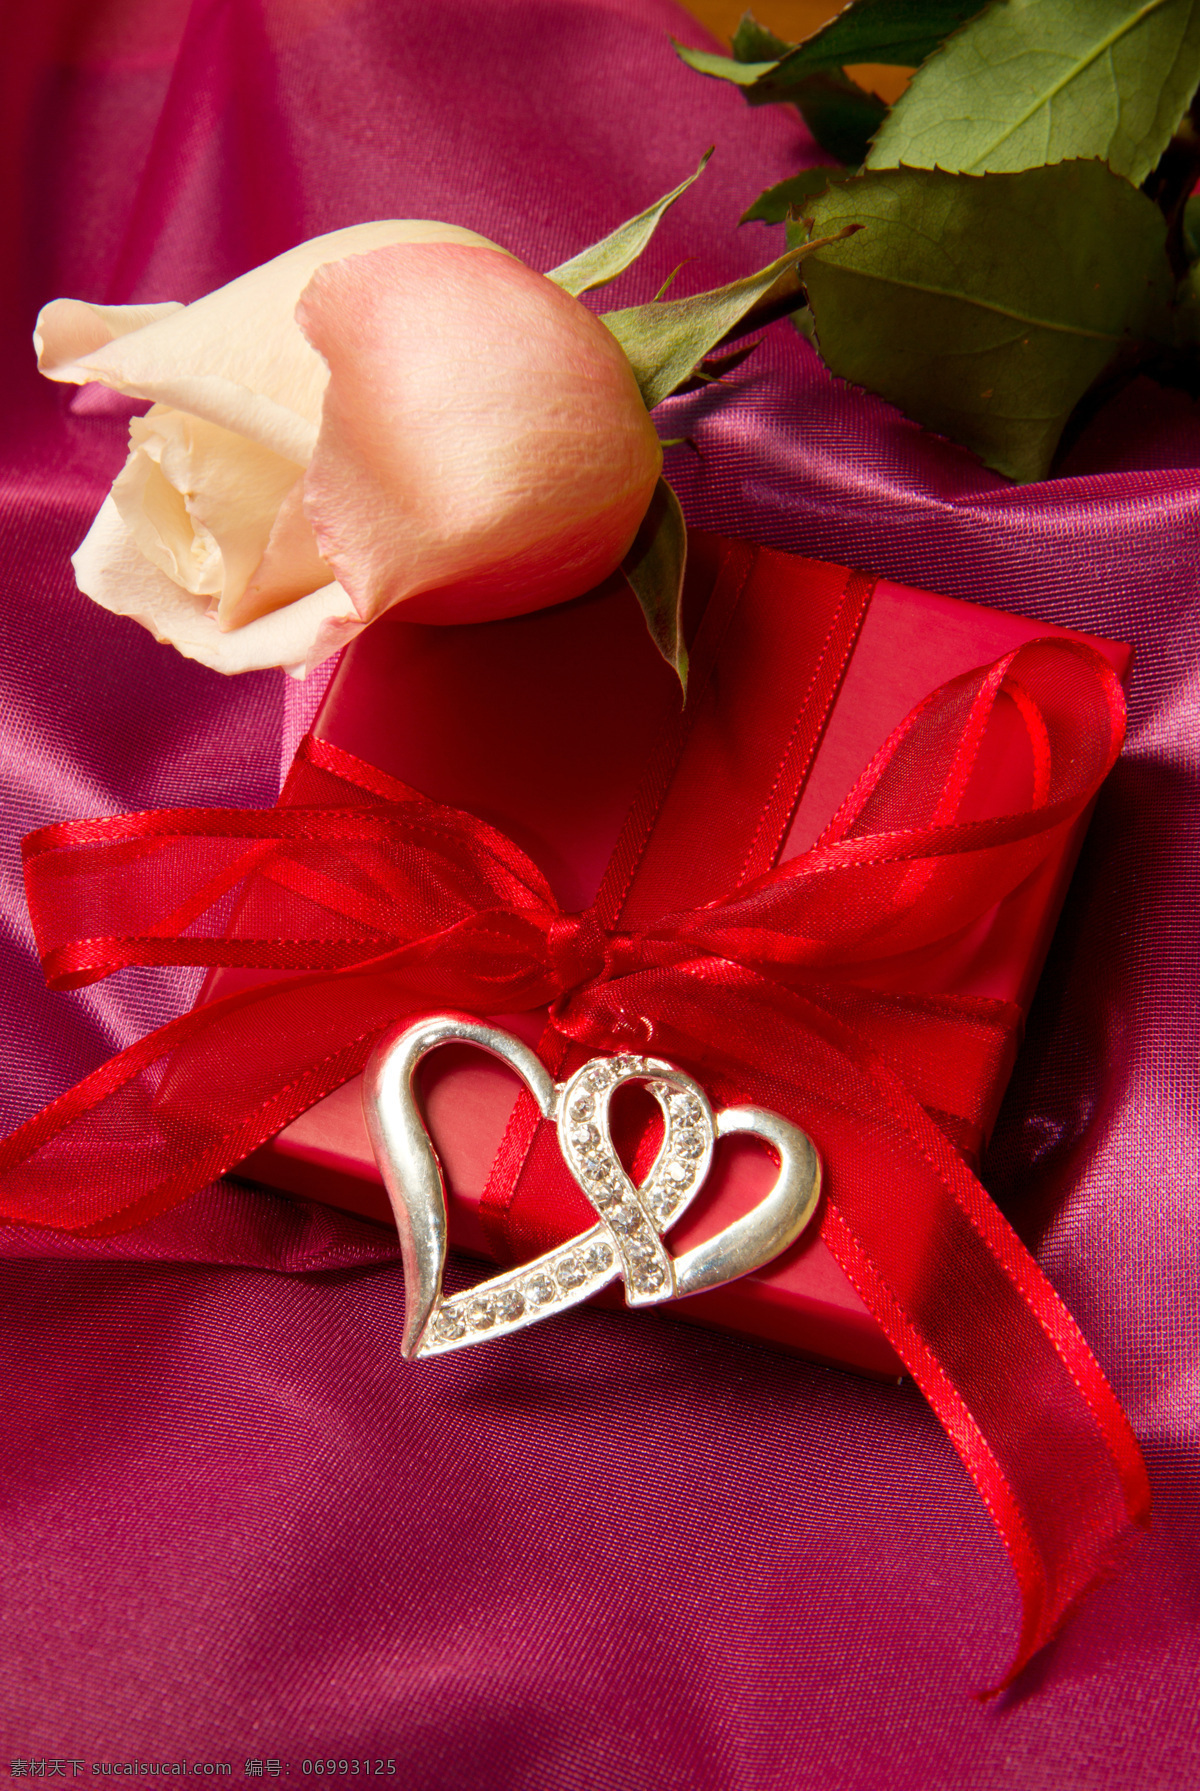 玫瑰 礼物 盒子 植物 礼物盒子 丝带 蝴蝶结 爱情 节日庆典 生活百科